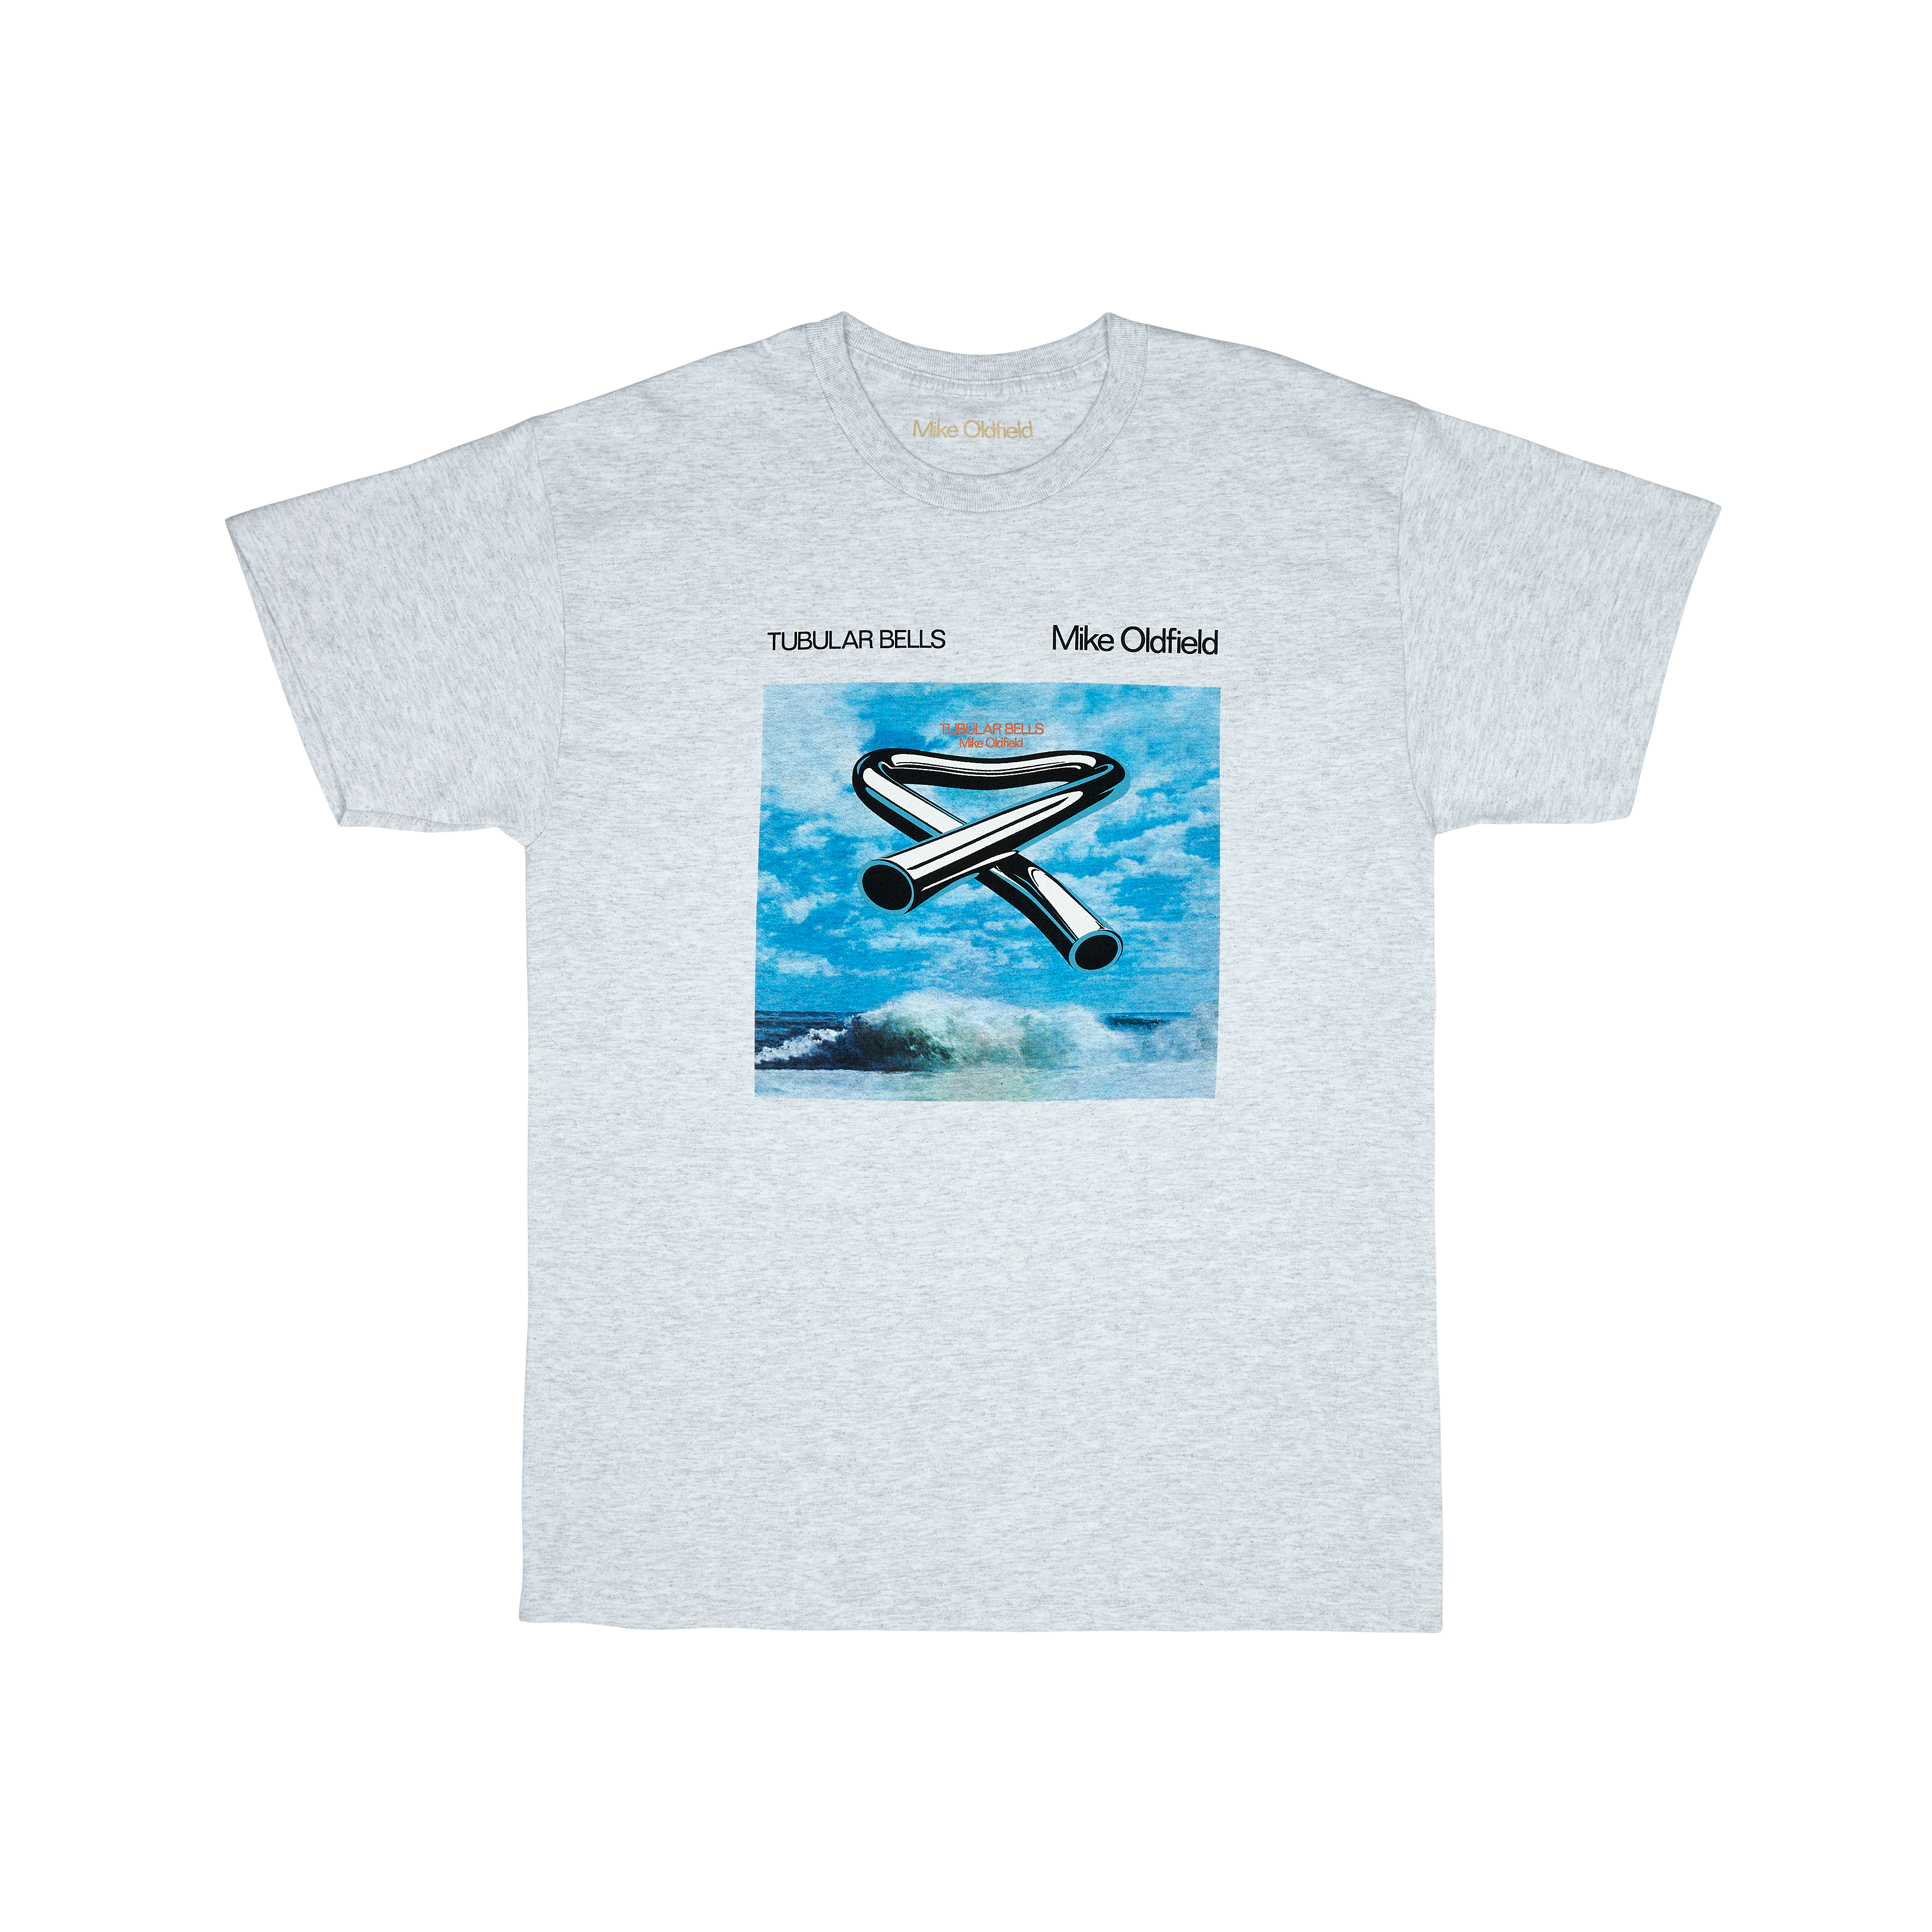 Tubular Bells: Tour Poster + Grey T-Shirt